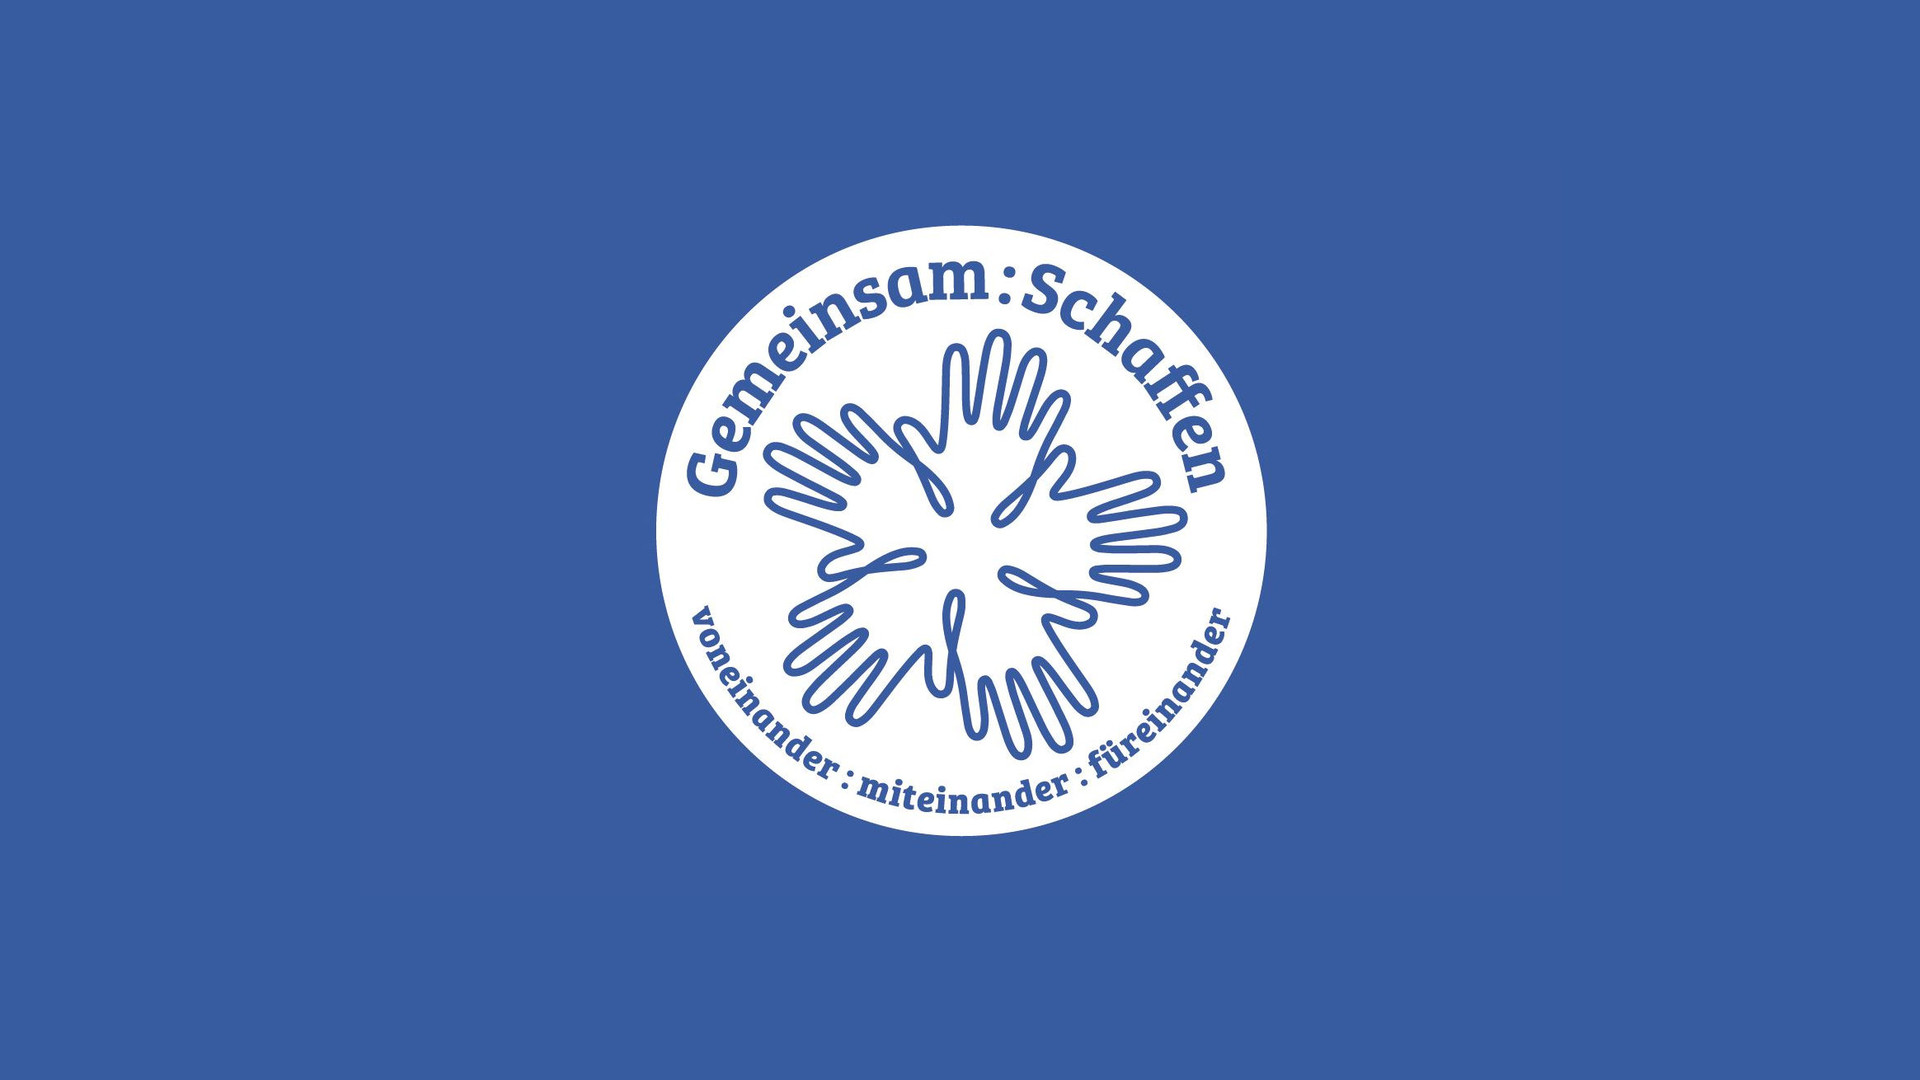 Das Wort-Bild-Logo des Ideenwettbewerbs „Gemeinsam:Schaffen“: Die Worte „Gemeinsam:Schaffen“ und „voneinander:miteinander:füreinander“ stehen mit fünf gezeichneten Händen in einem Kreis blau auf weiß geschrieben.